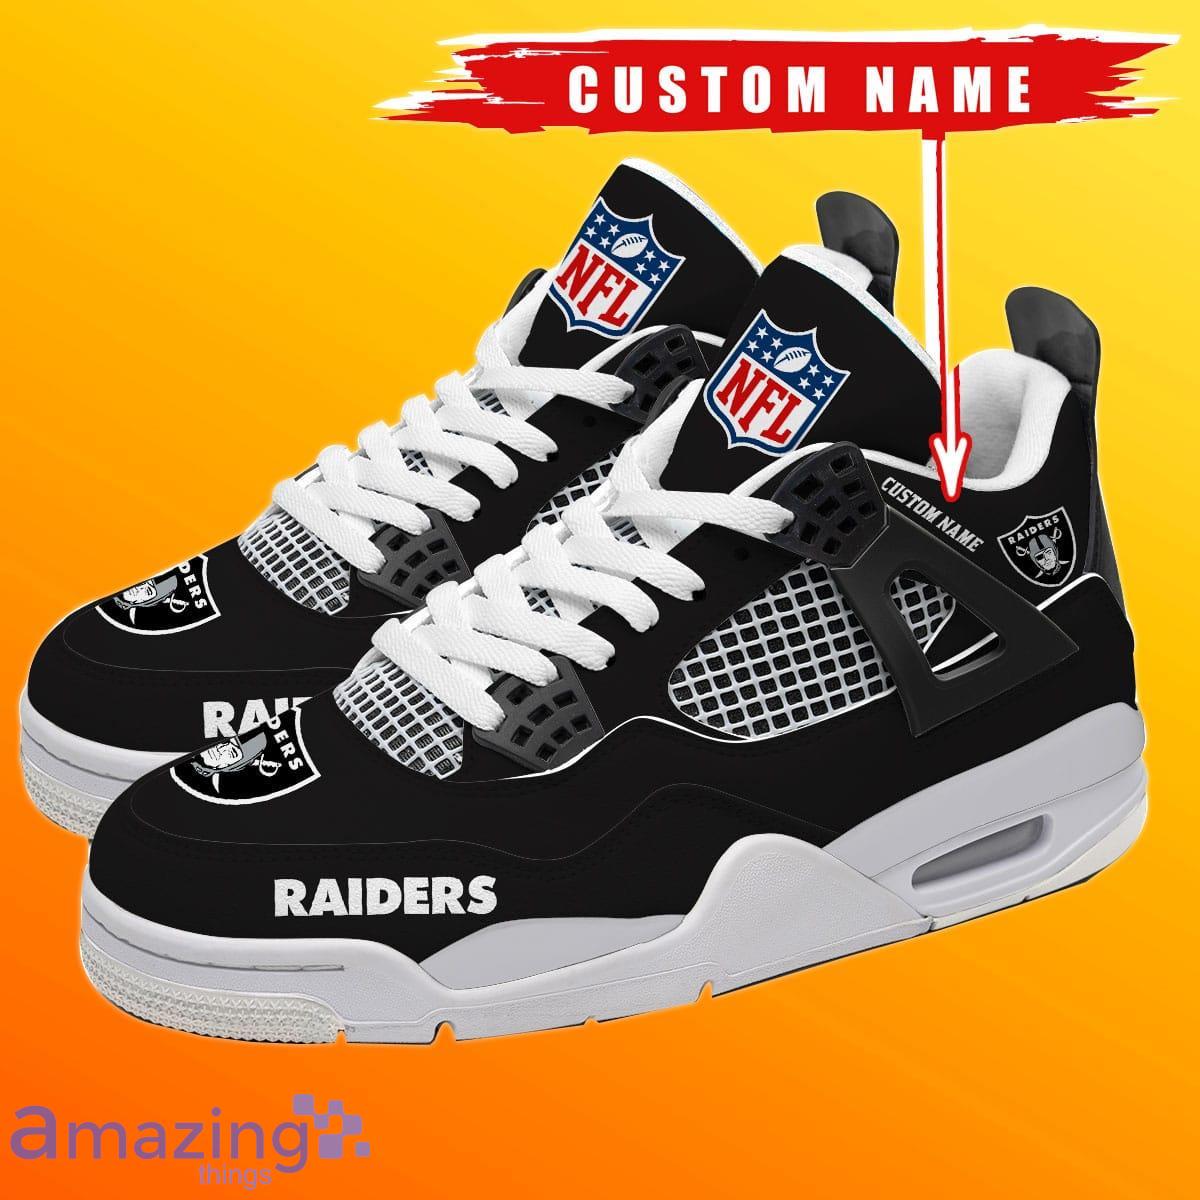 Las Vegas Raiders Custom Name NFL Air Jordan 11 Shoes For Men And Women  Sport Team